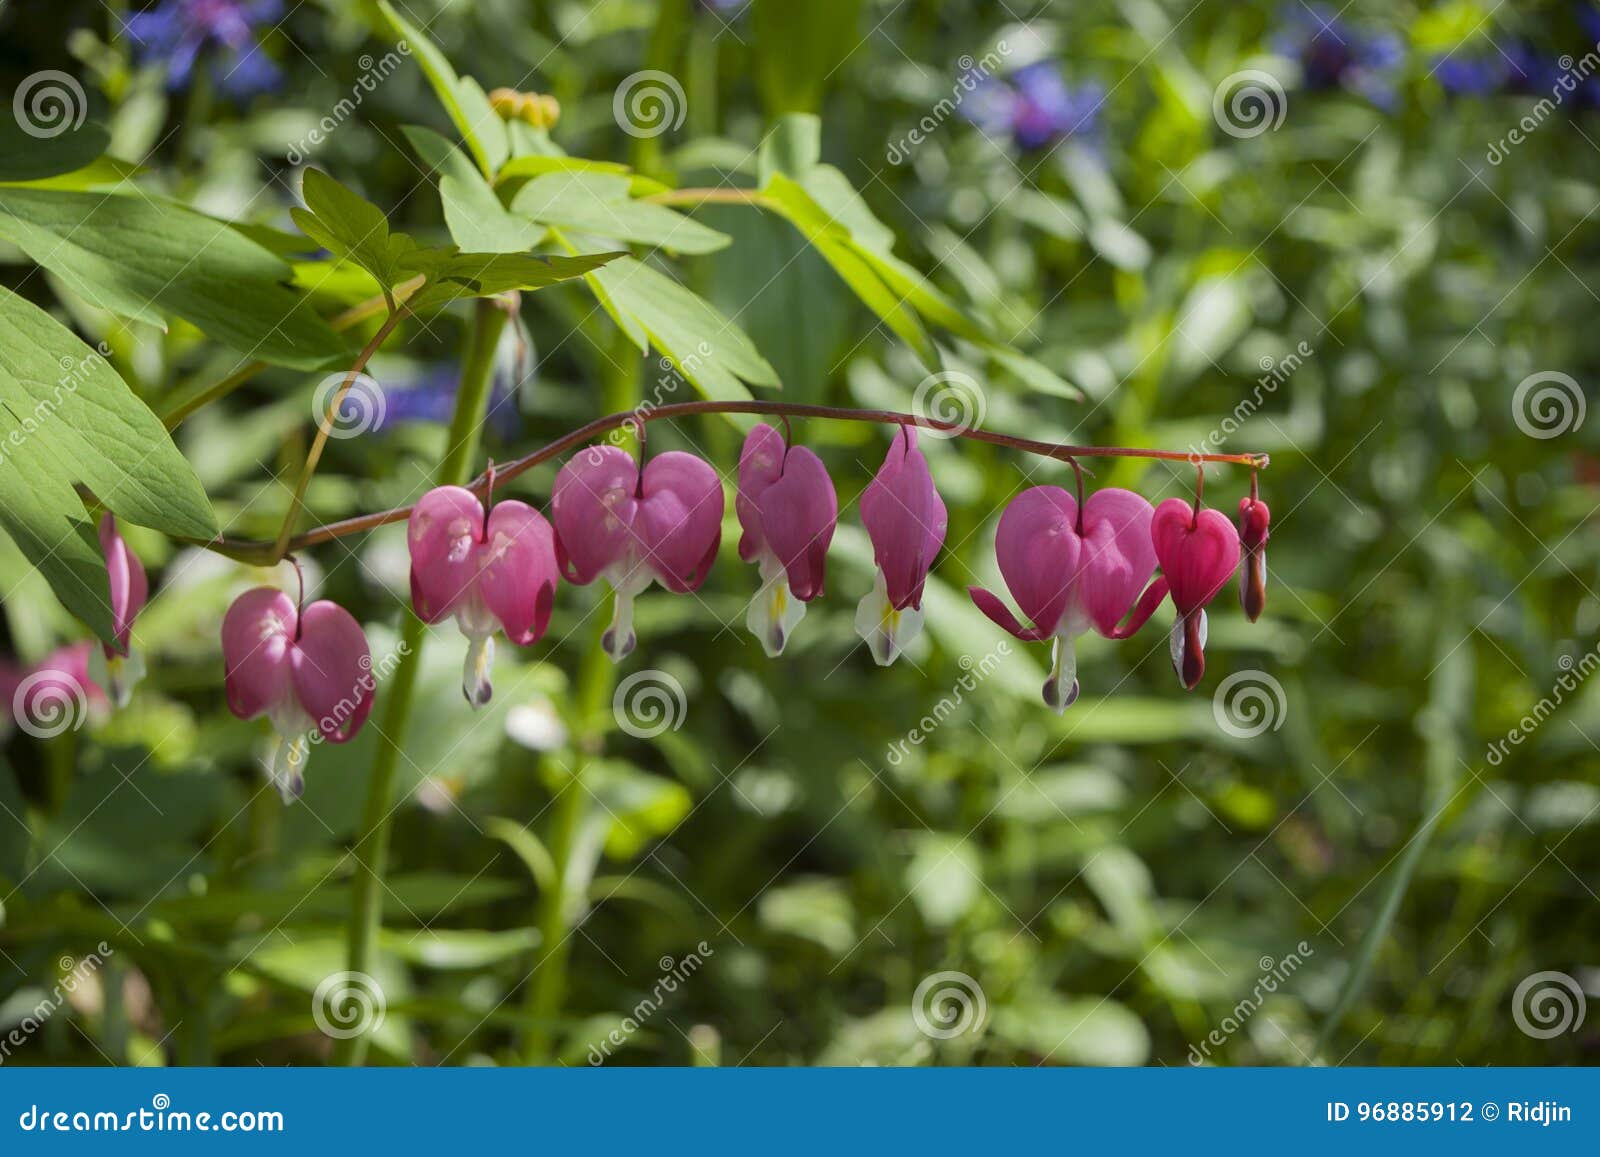 pink flowers dicÃÂ©ntra `crying heart` with drops of dew, on a branch. on the background of a green garden